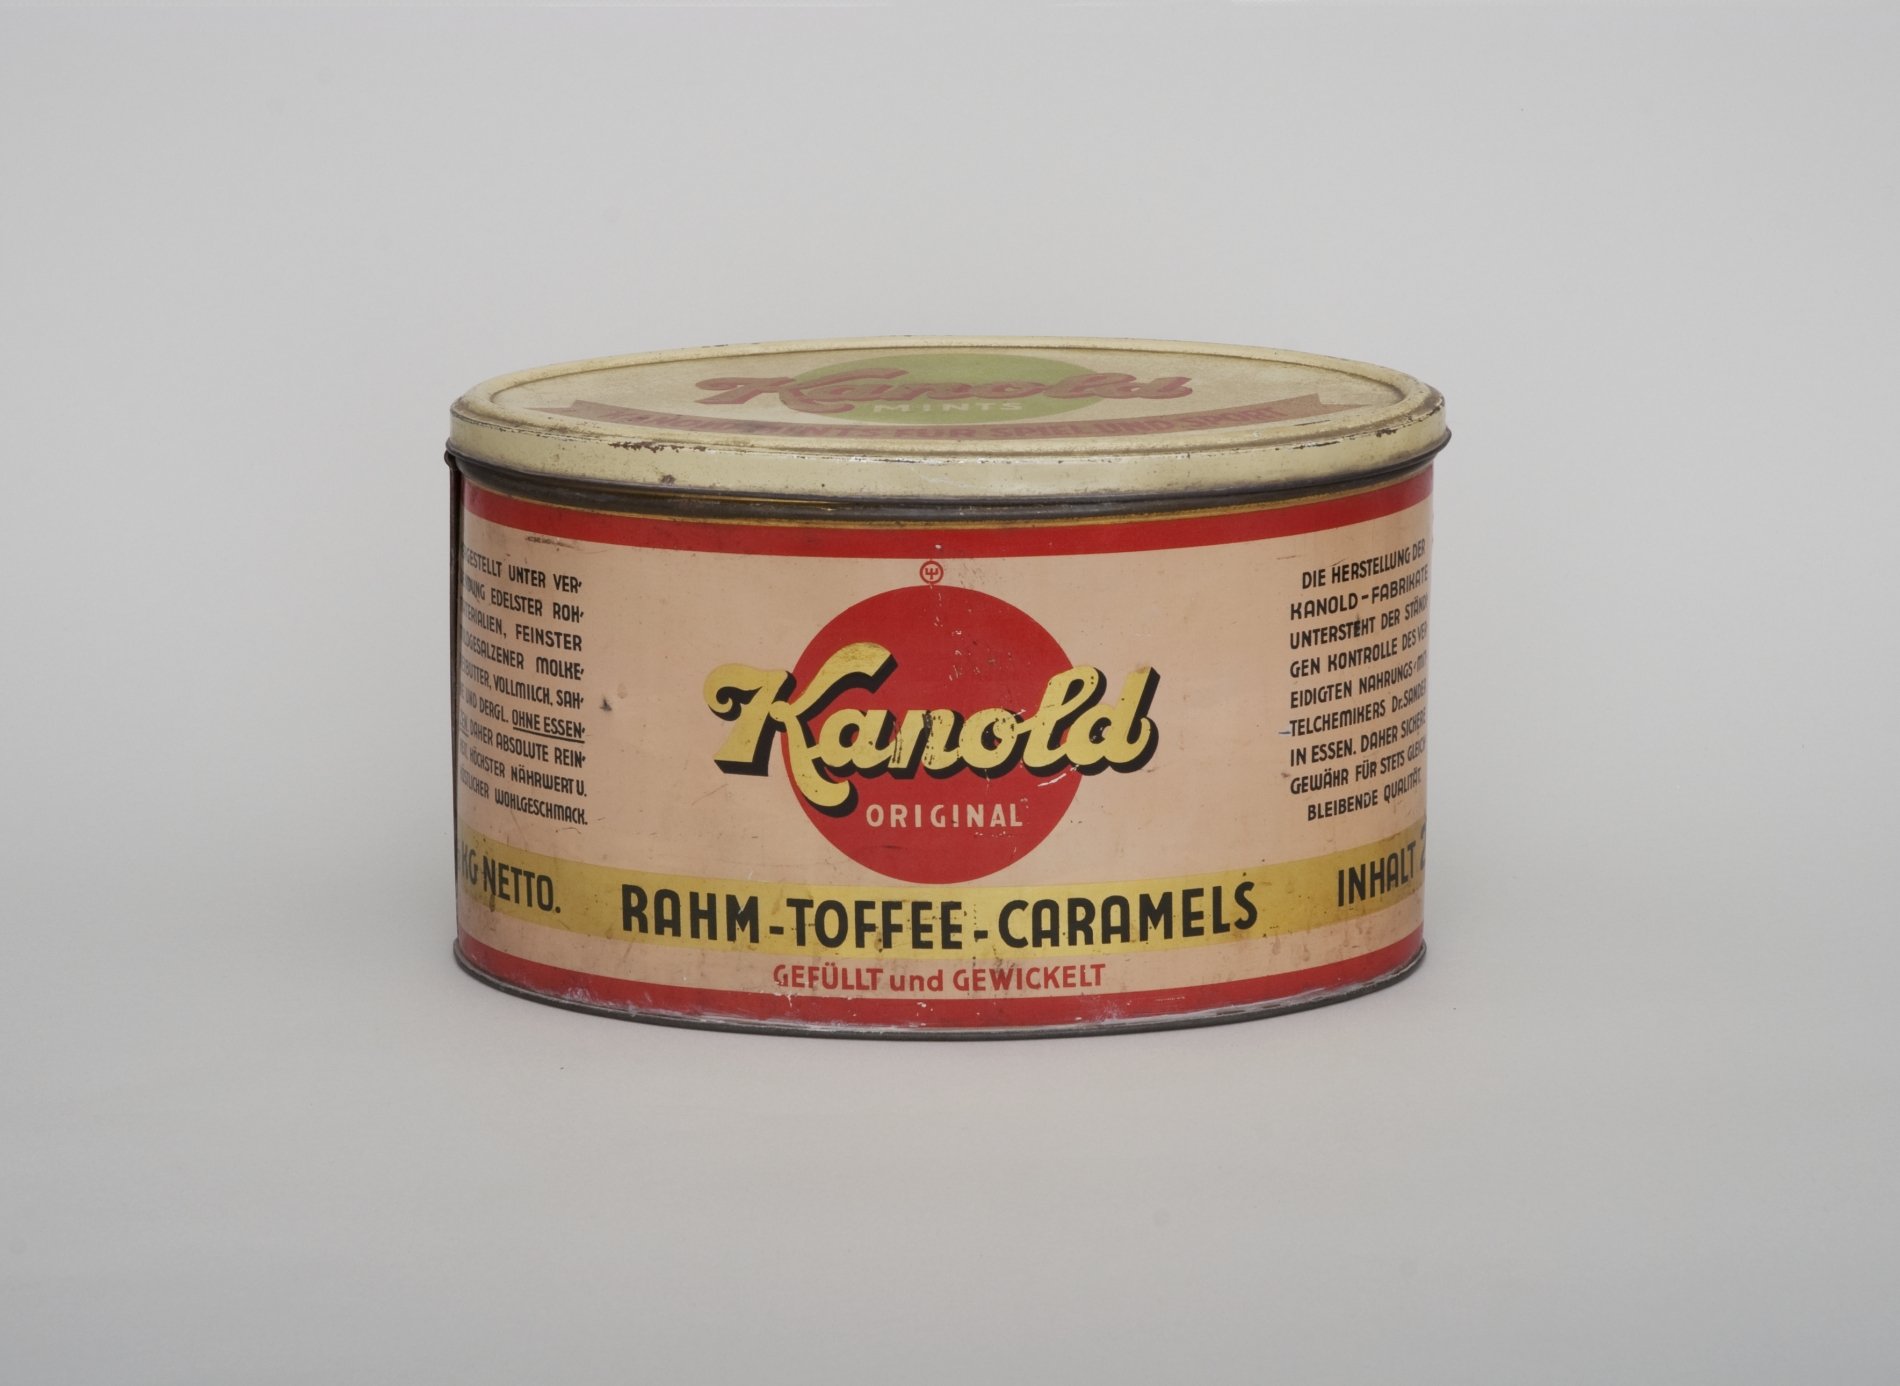 Bonbon-Dose "Kanold Rahm-Toffee-Caramels" (Stiftung Domäne Dahlem - Landgut und Museum, Weiternutzung nur mit Genehmigung des Museums CC BY-NC-SA)